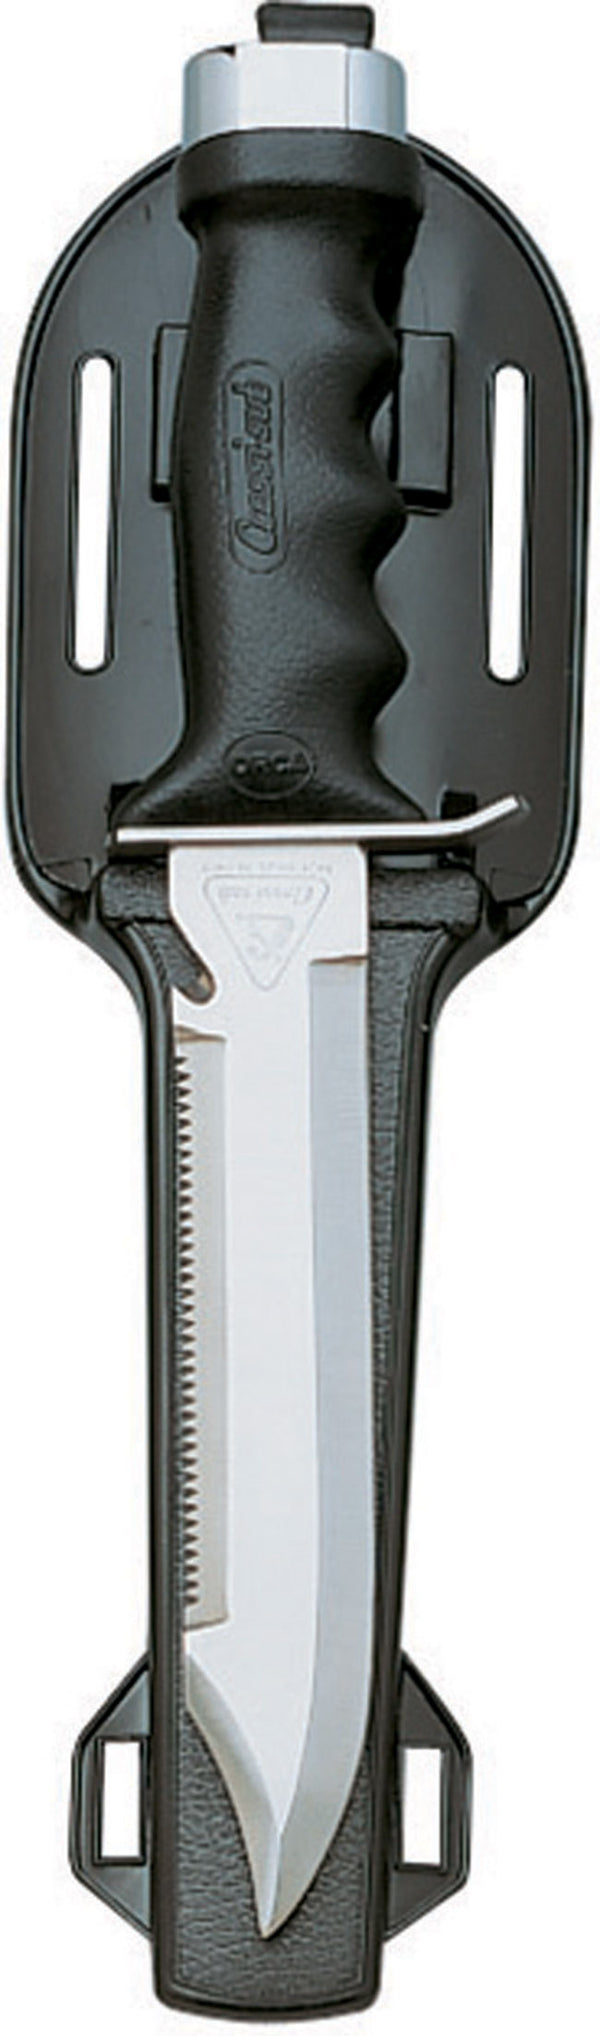 Cressi Giant Knife RC556500 - Scuba